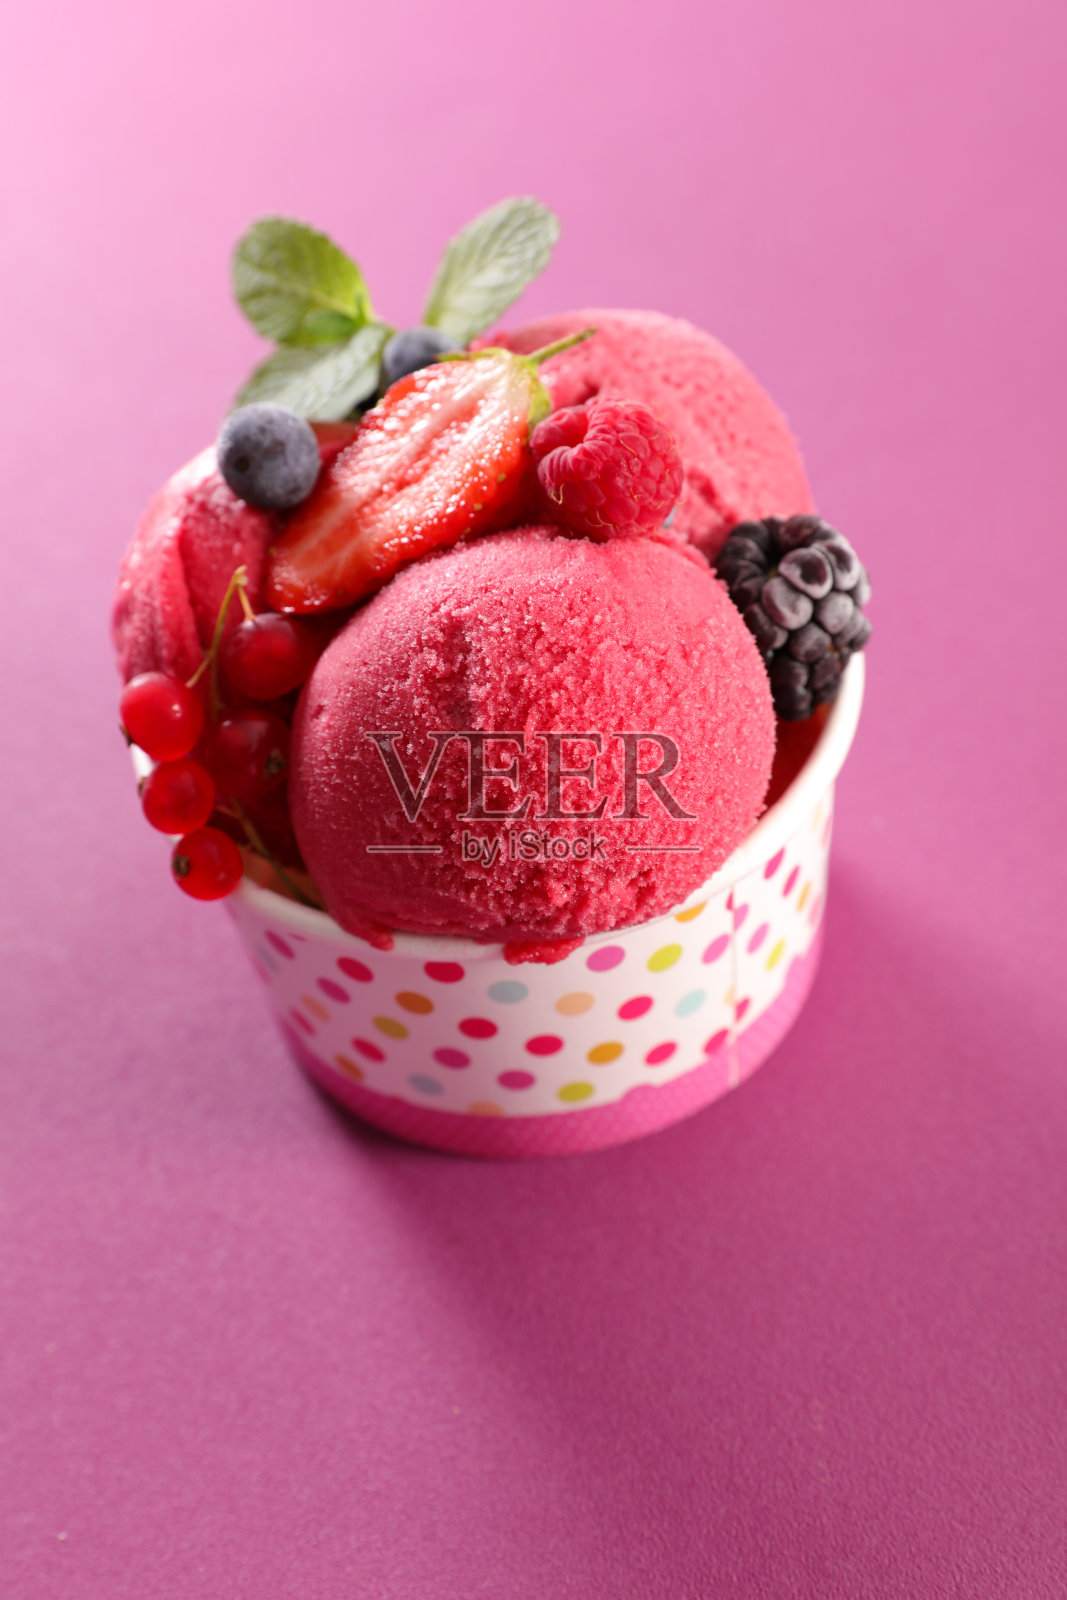 冰淇淋和水果照片摄影图片